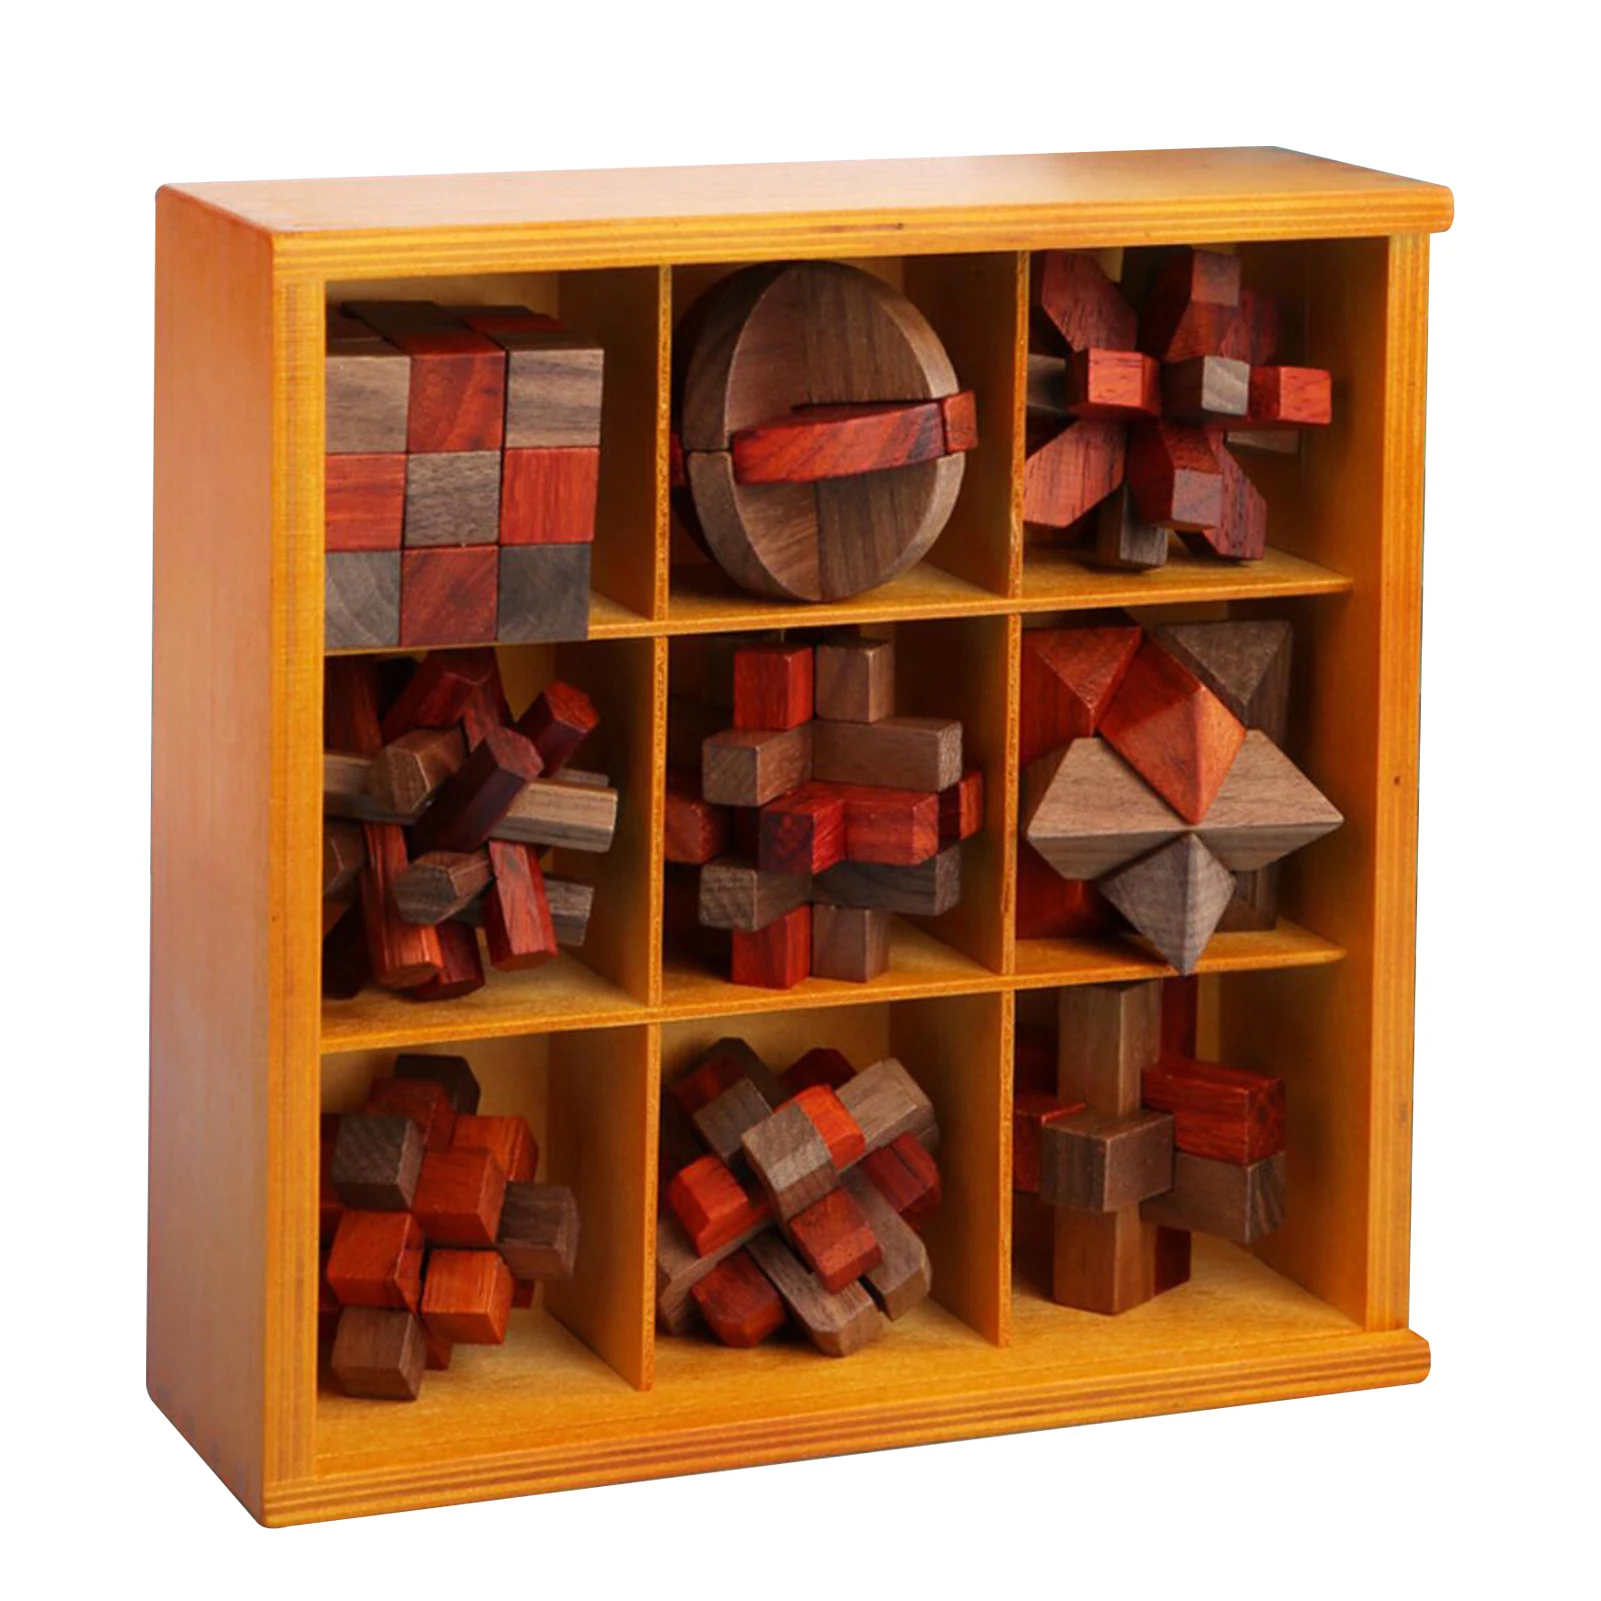 

9 шт/набор 3D деревянная головоломка, куб, логические Kongming блокировки Лю Бан замок IQ Тесты игрушки головоломки игрушки для взрослых и детей